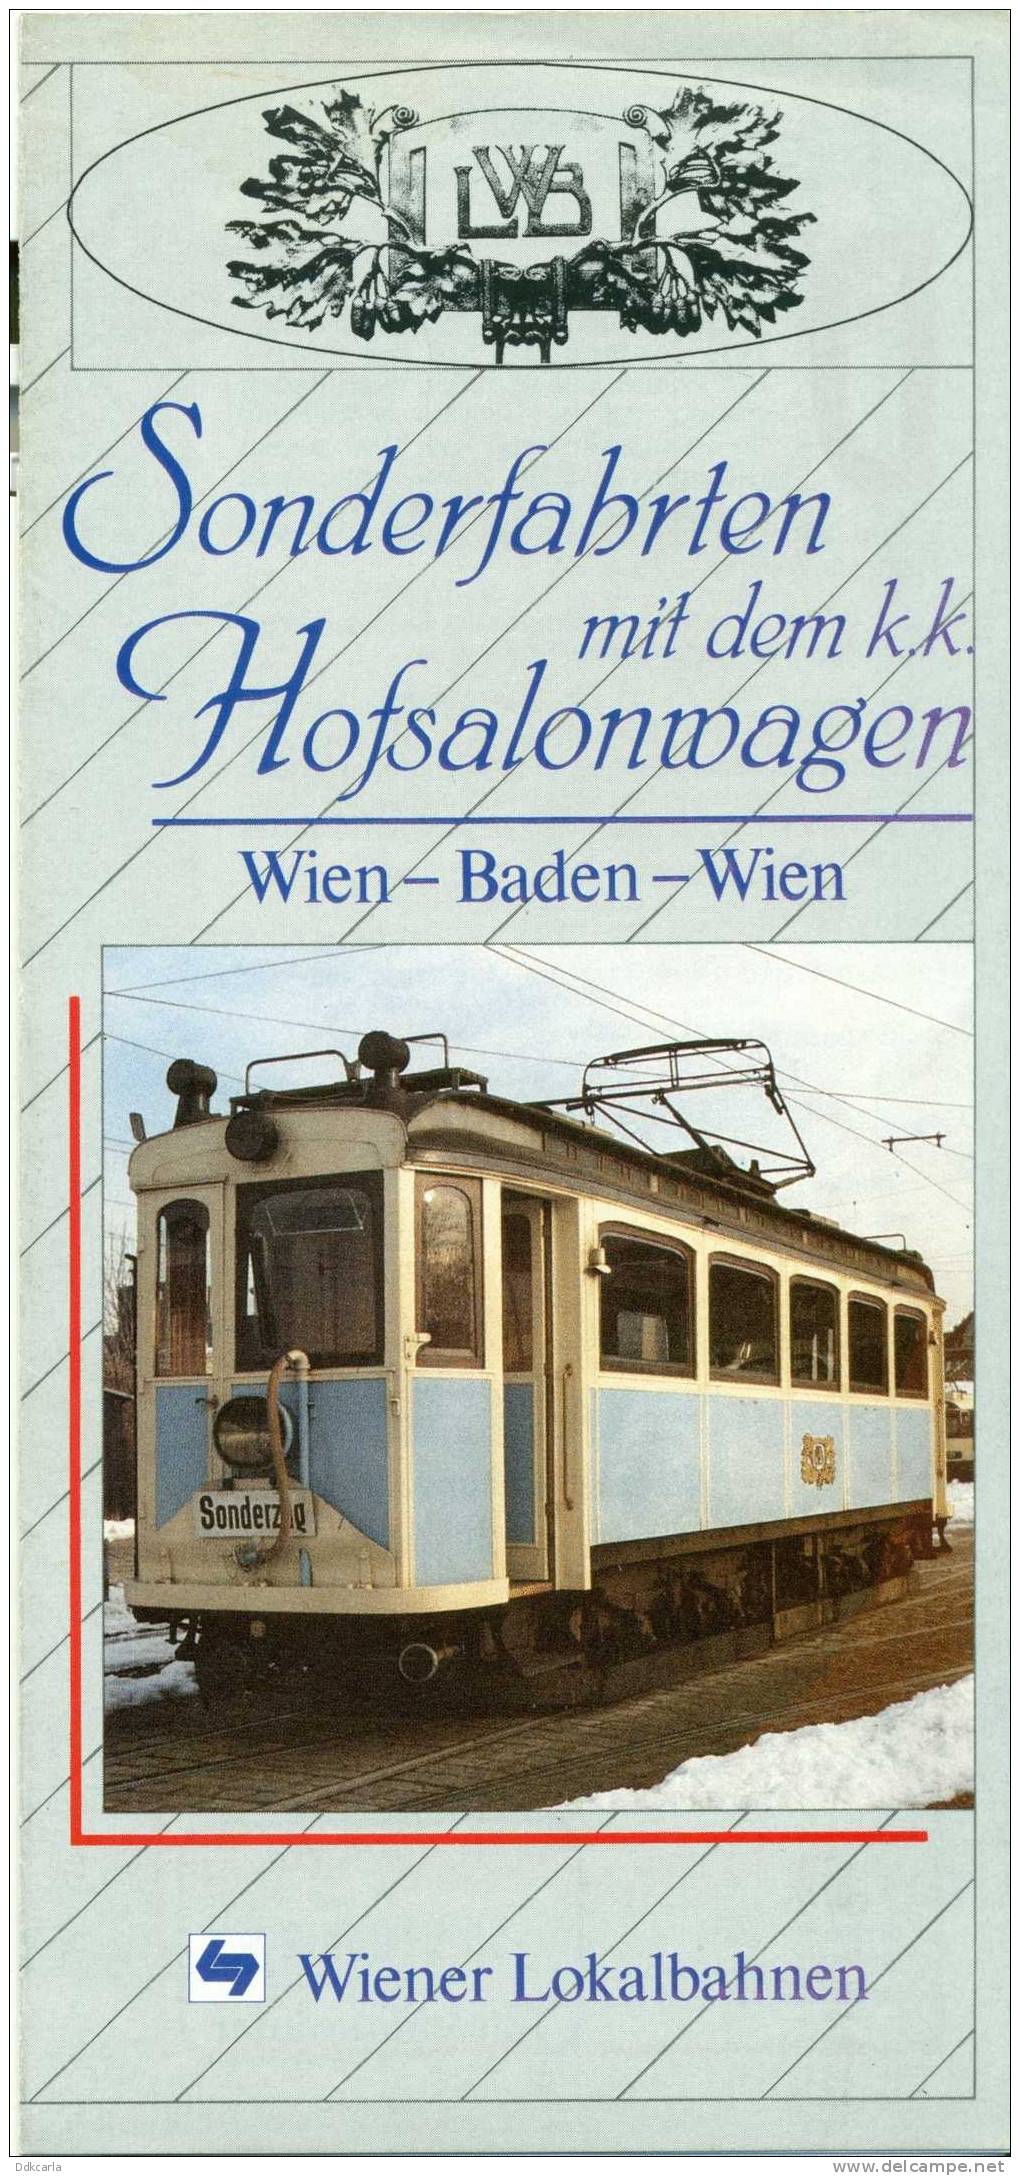 Dépliant - Wien-Baden-Wien - Sonderfahrten Mit Dem K.k. Hofsalonwagen - Transport